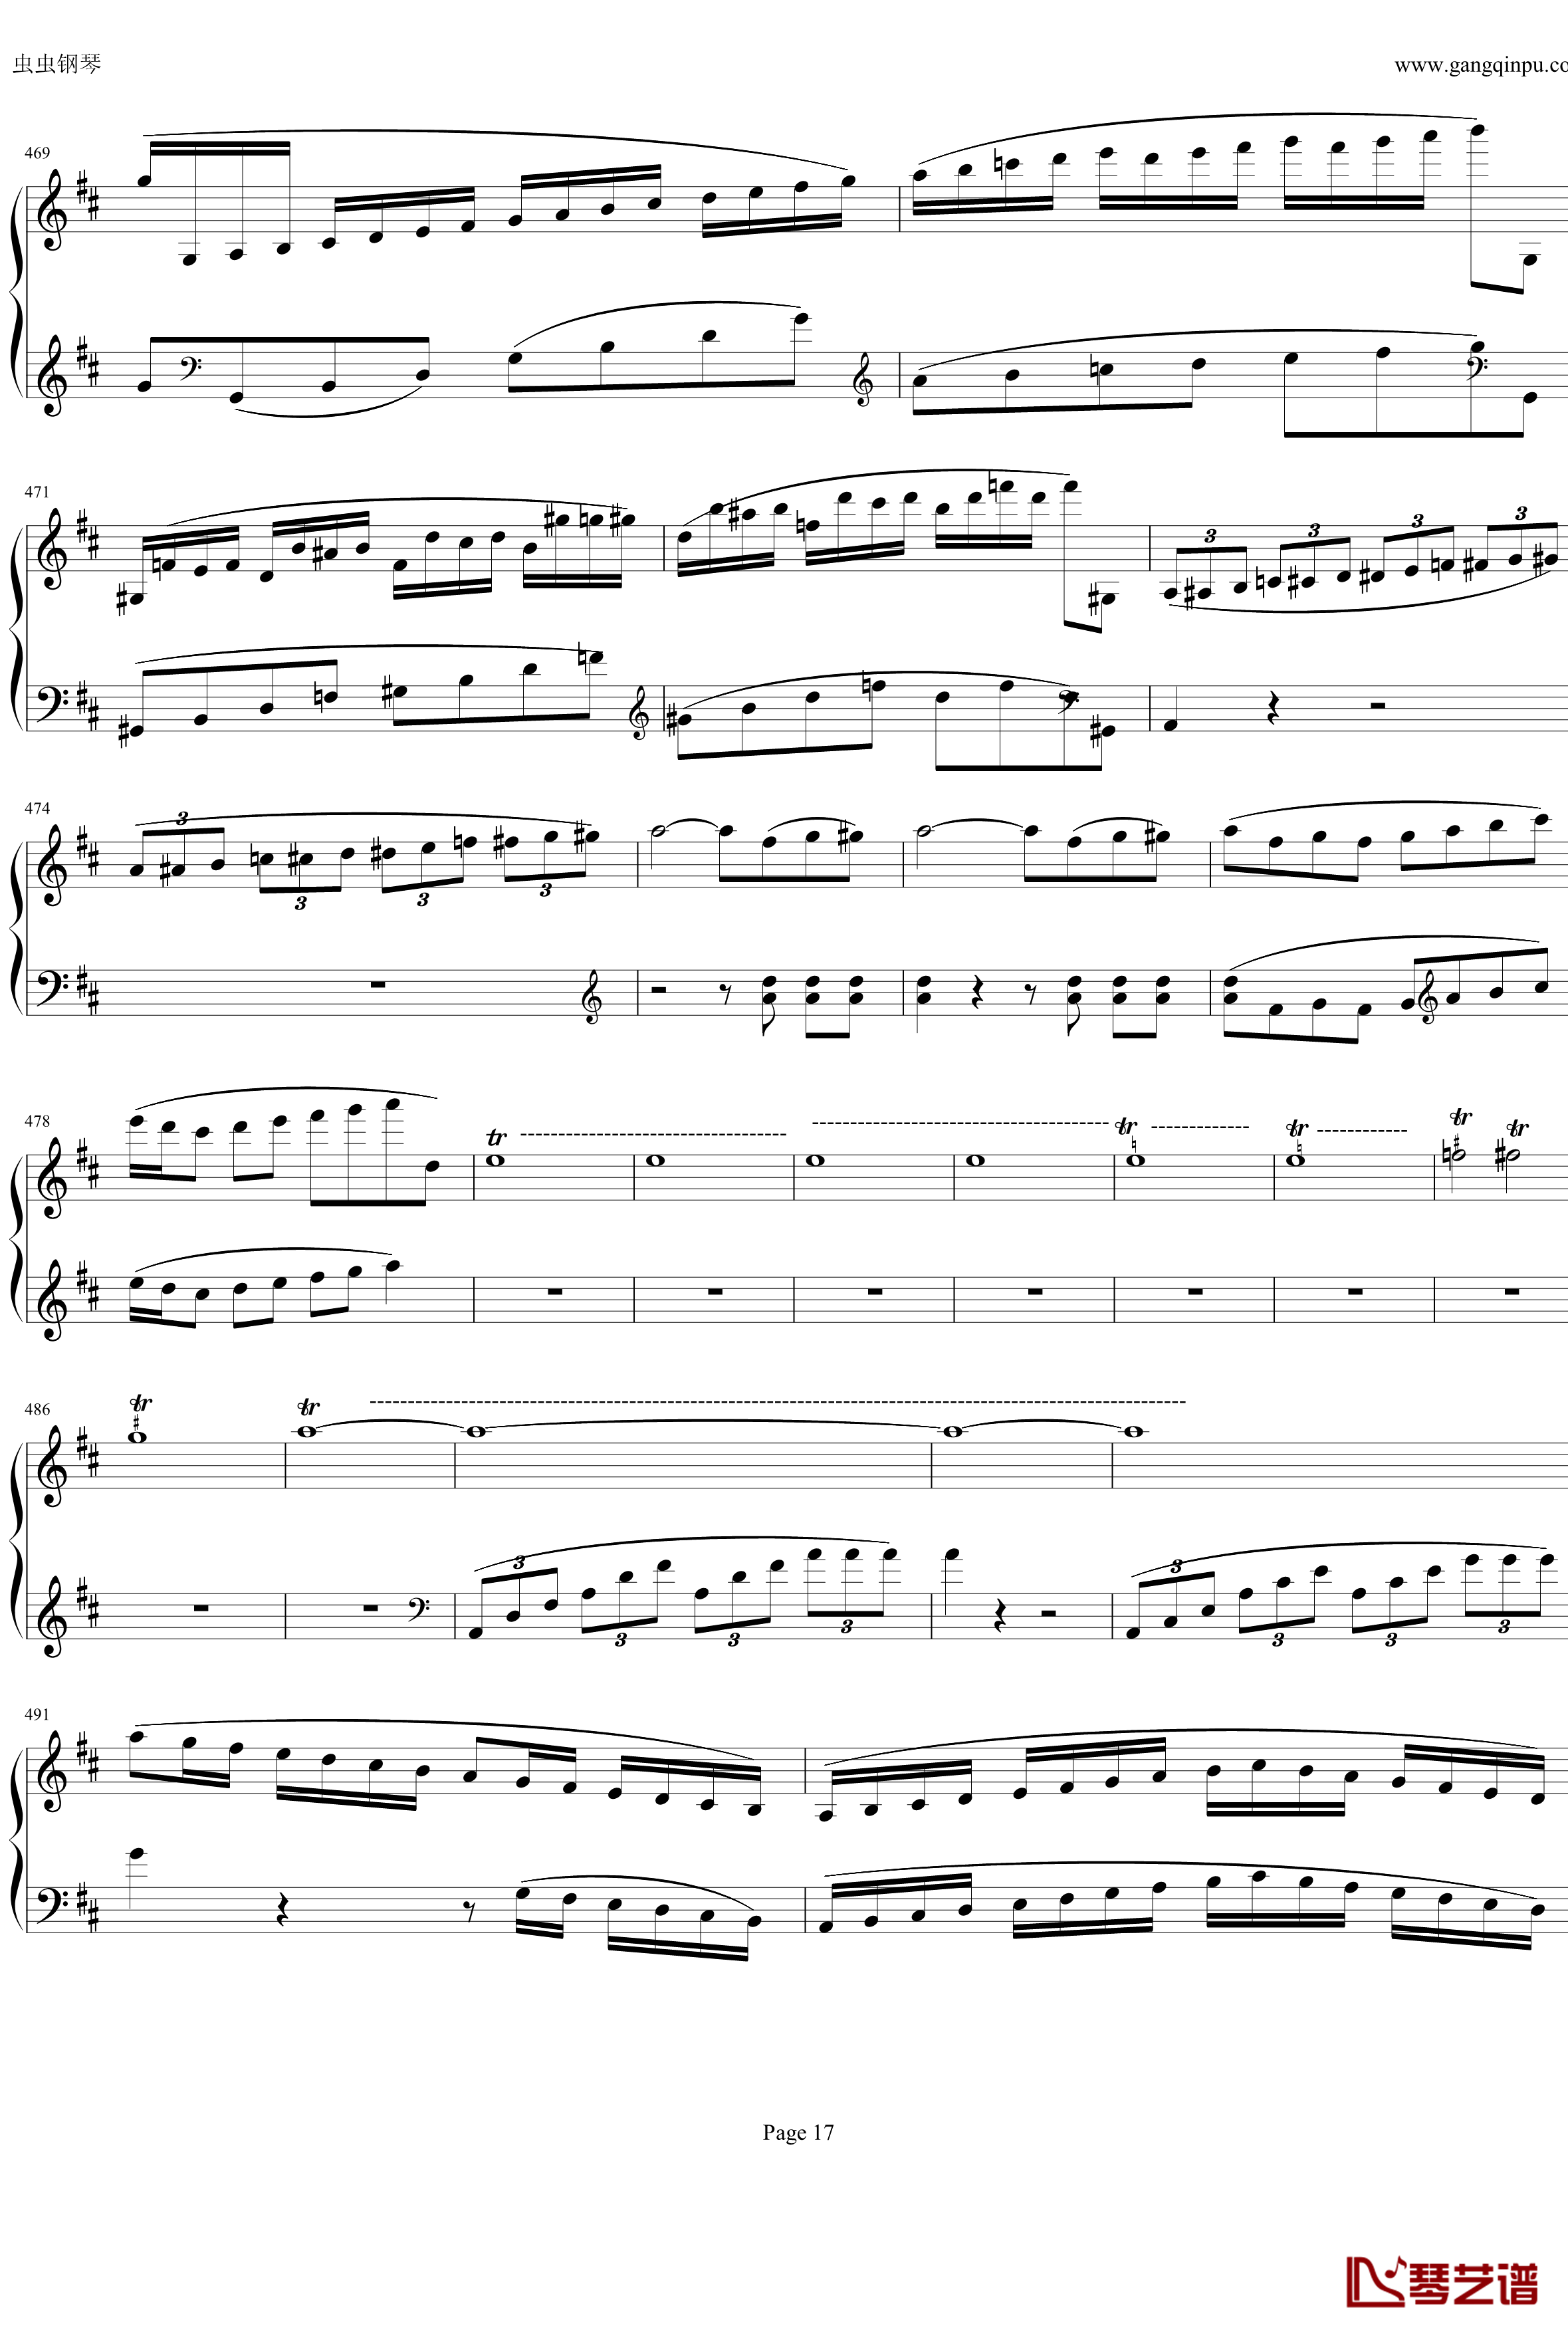 钢琴协奏曲Op61第一乐章钢琴谱-贝多芬-beethoven17